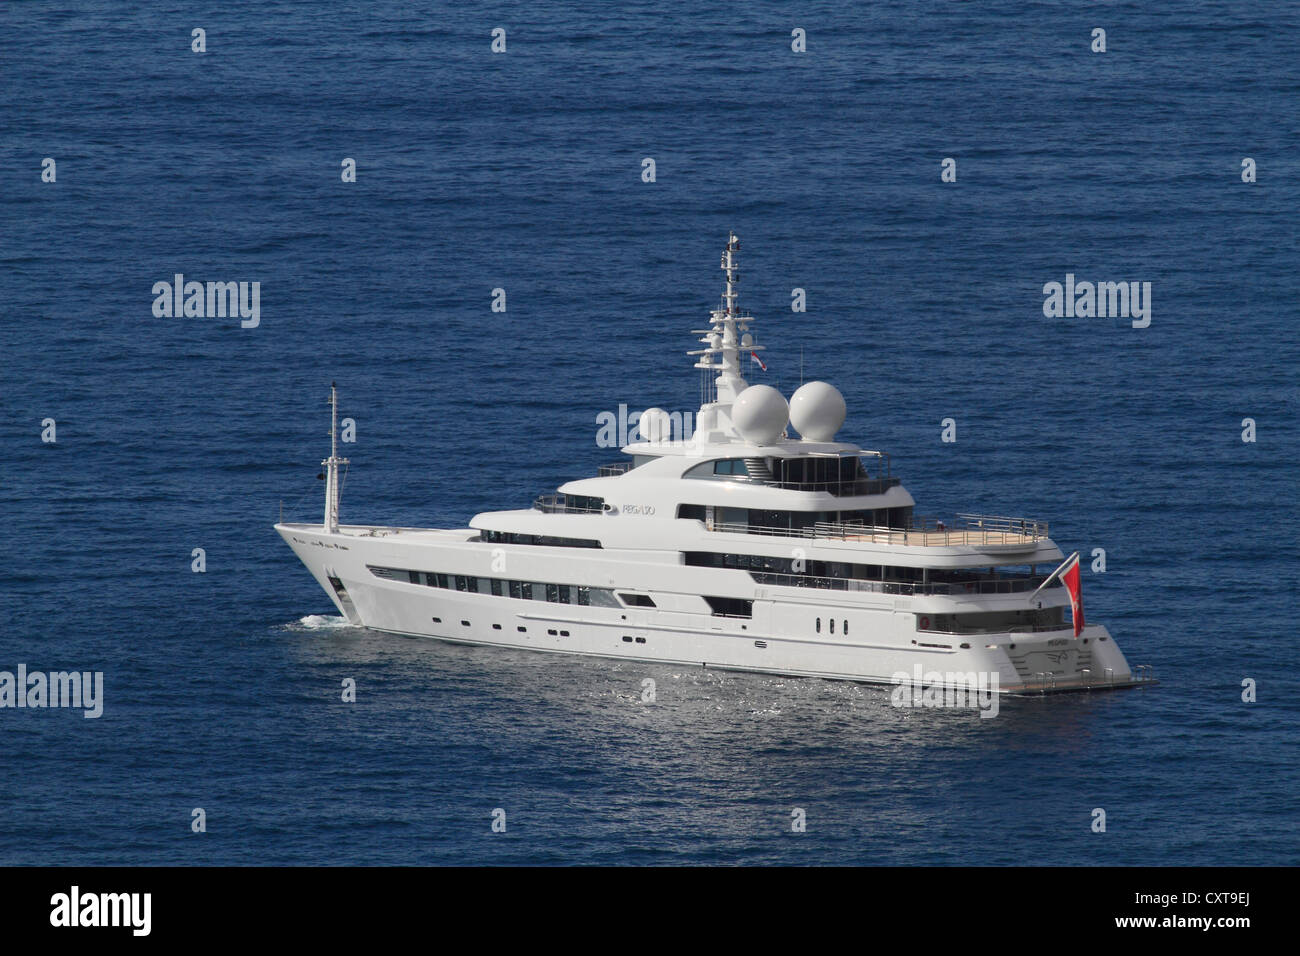 Pegaso, un crucero y buque de investigación, construido por los astilleros FREIRE, longitud: 73.60 m, construido en 2011, que esté anclado en Mónaco Foto de stock